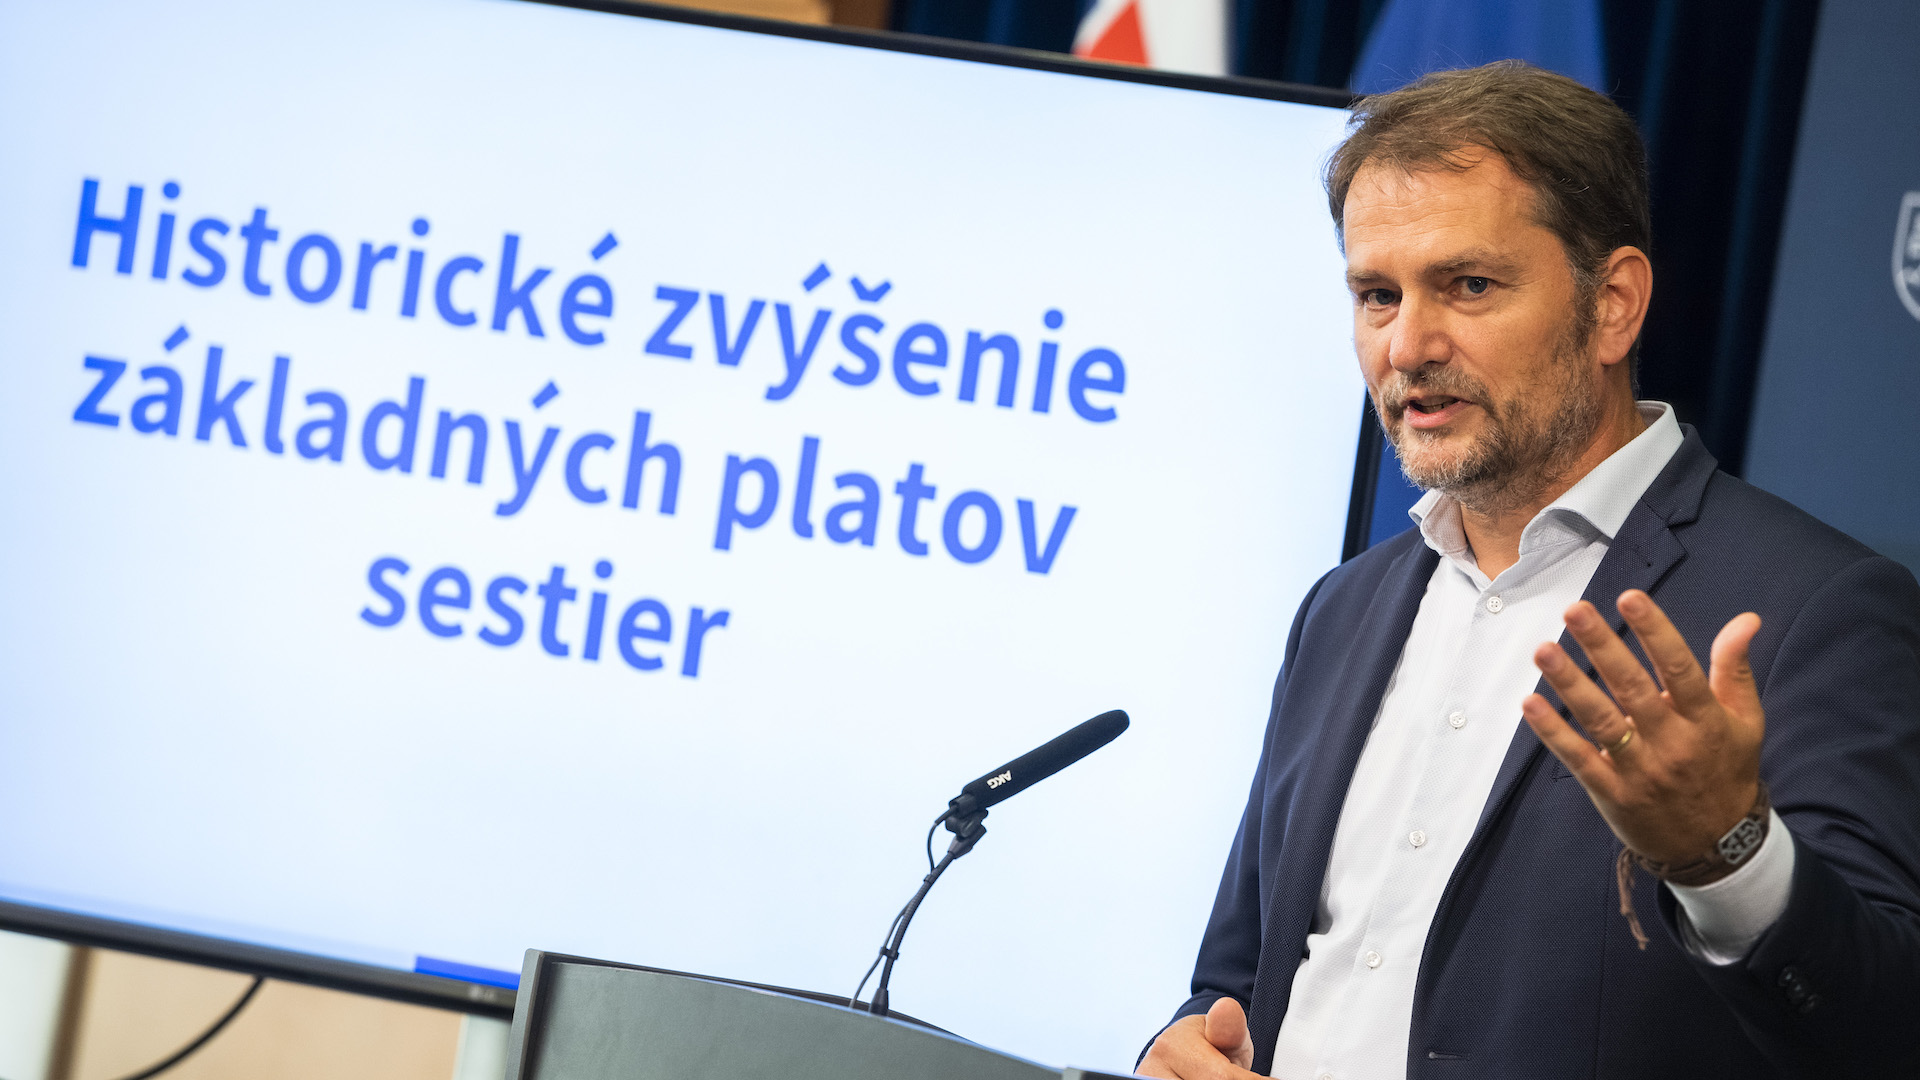 Na snímke podpredseda vlády a minister financií SR Igor Matovič (OĽaNO) počas tlačovej konferencie k navýšeniu základných platov zdravotných sestier v Bratislave vo štvrtok 18. augusta 2022.